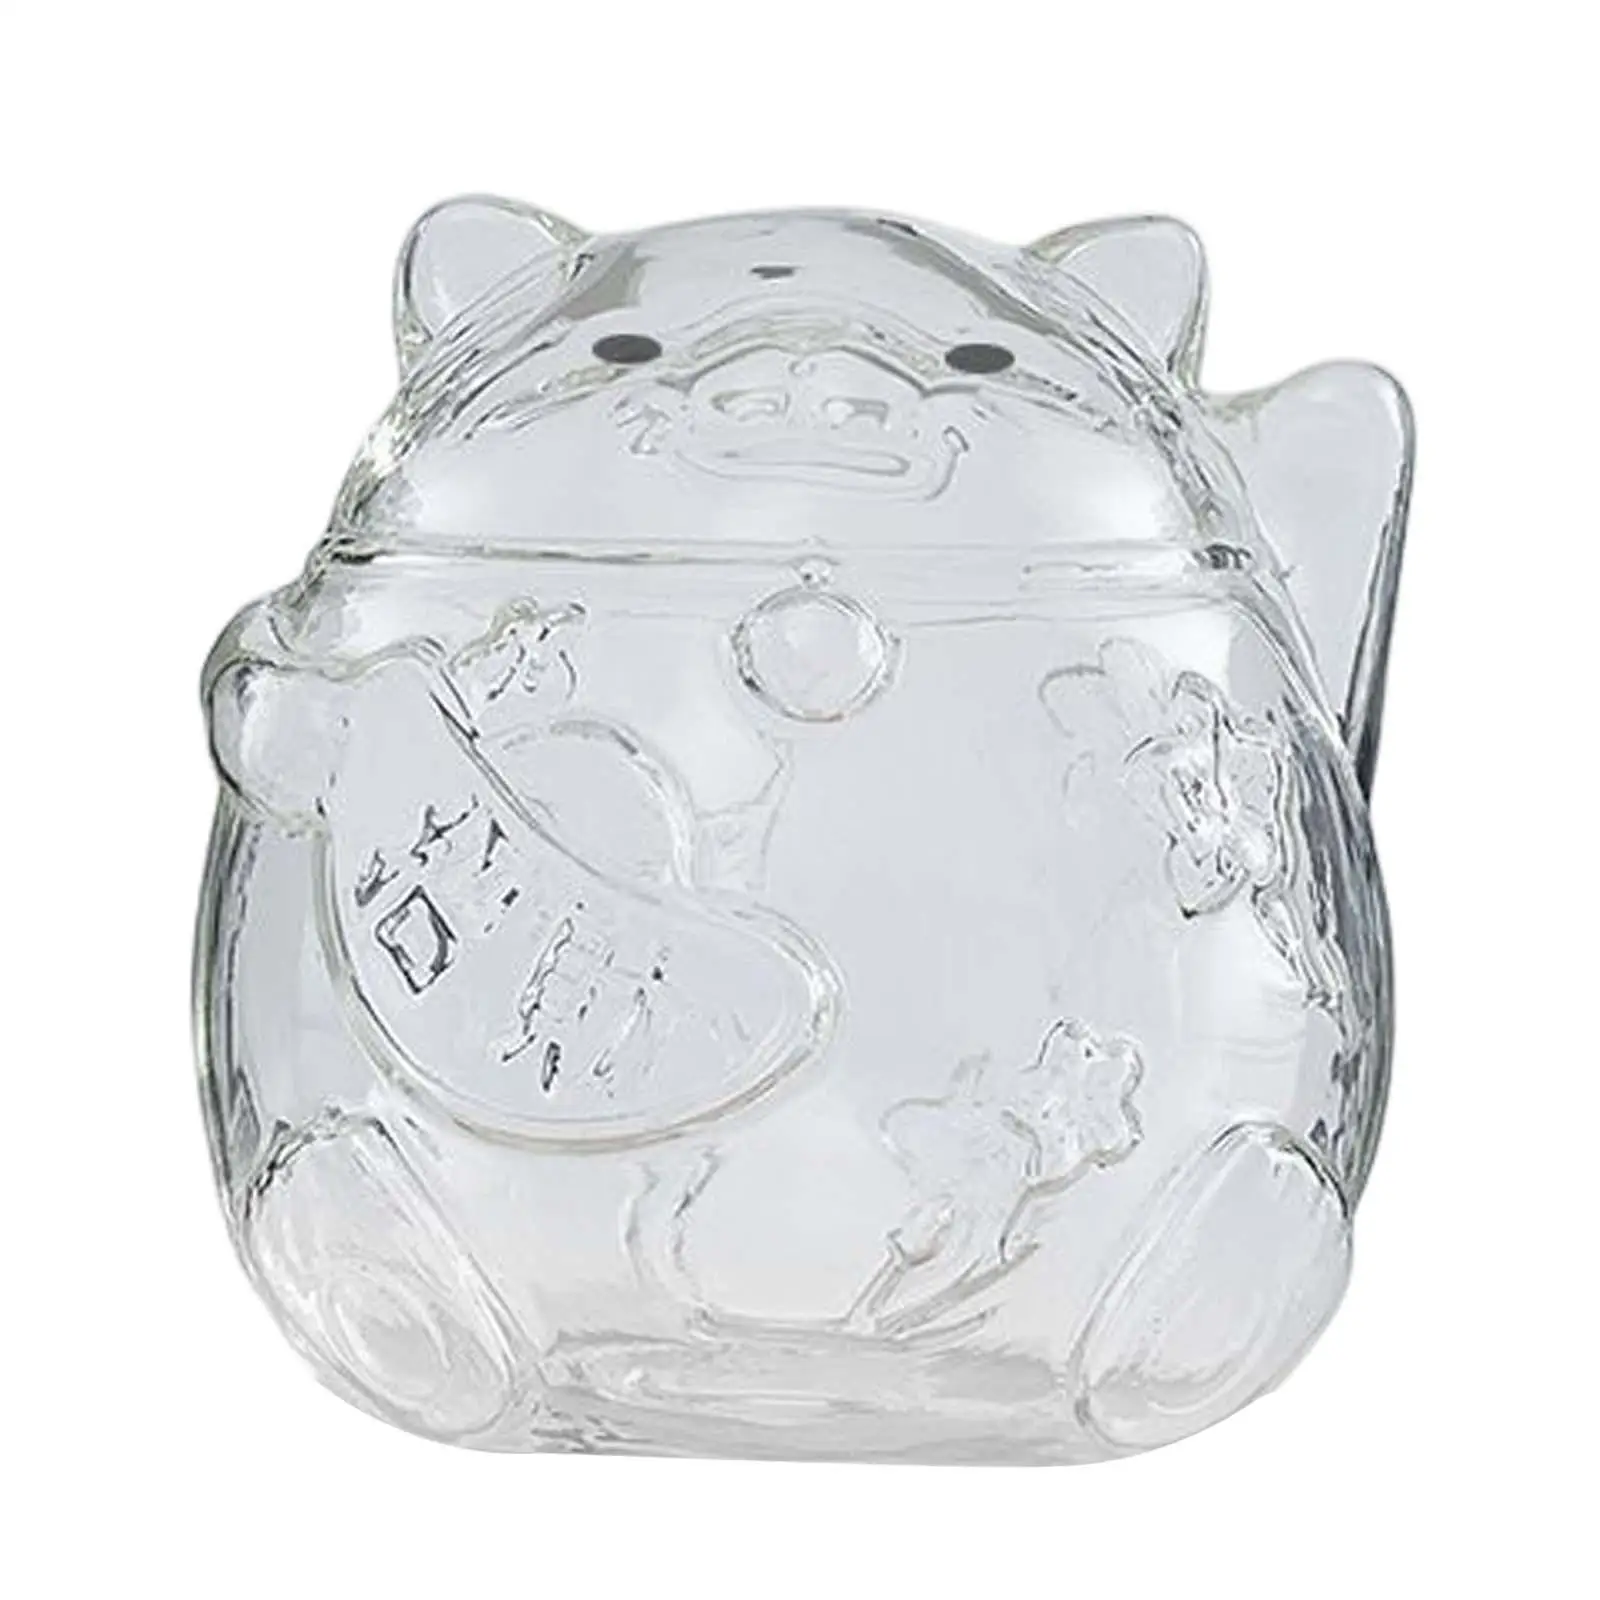 Clear Lucky Cat Piggy Bank Money Box Ornaments Glass for Girls Gift Children